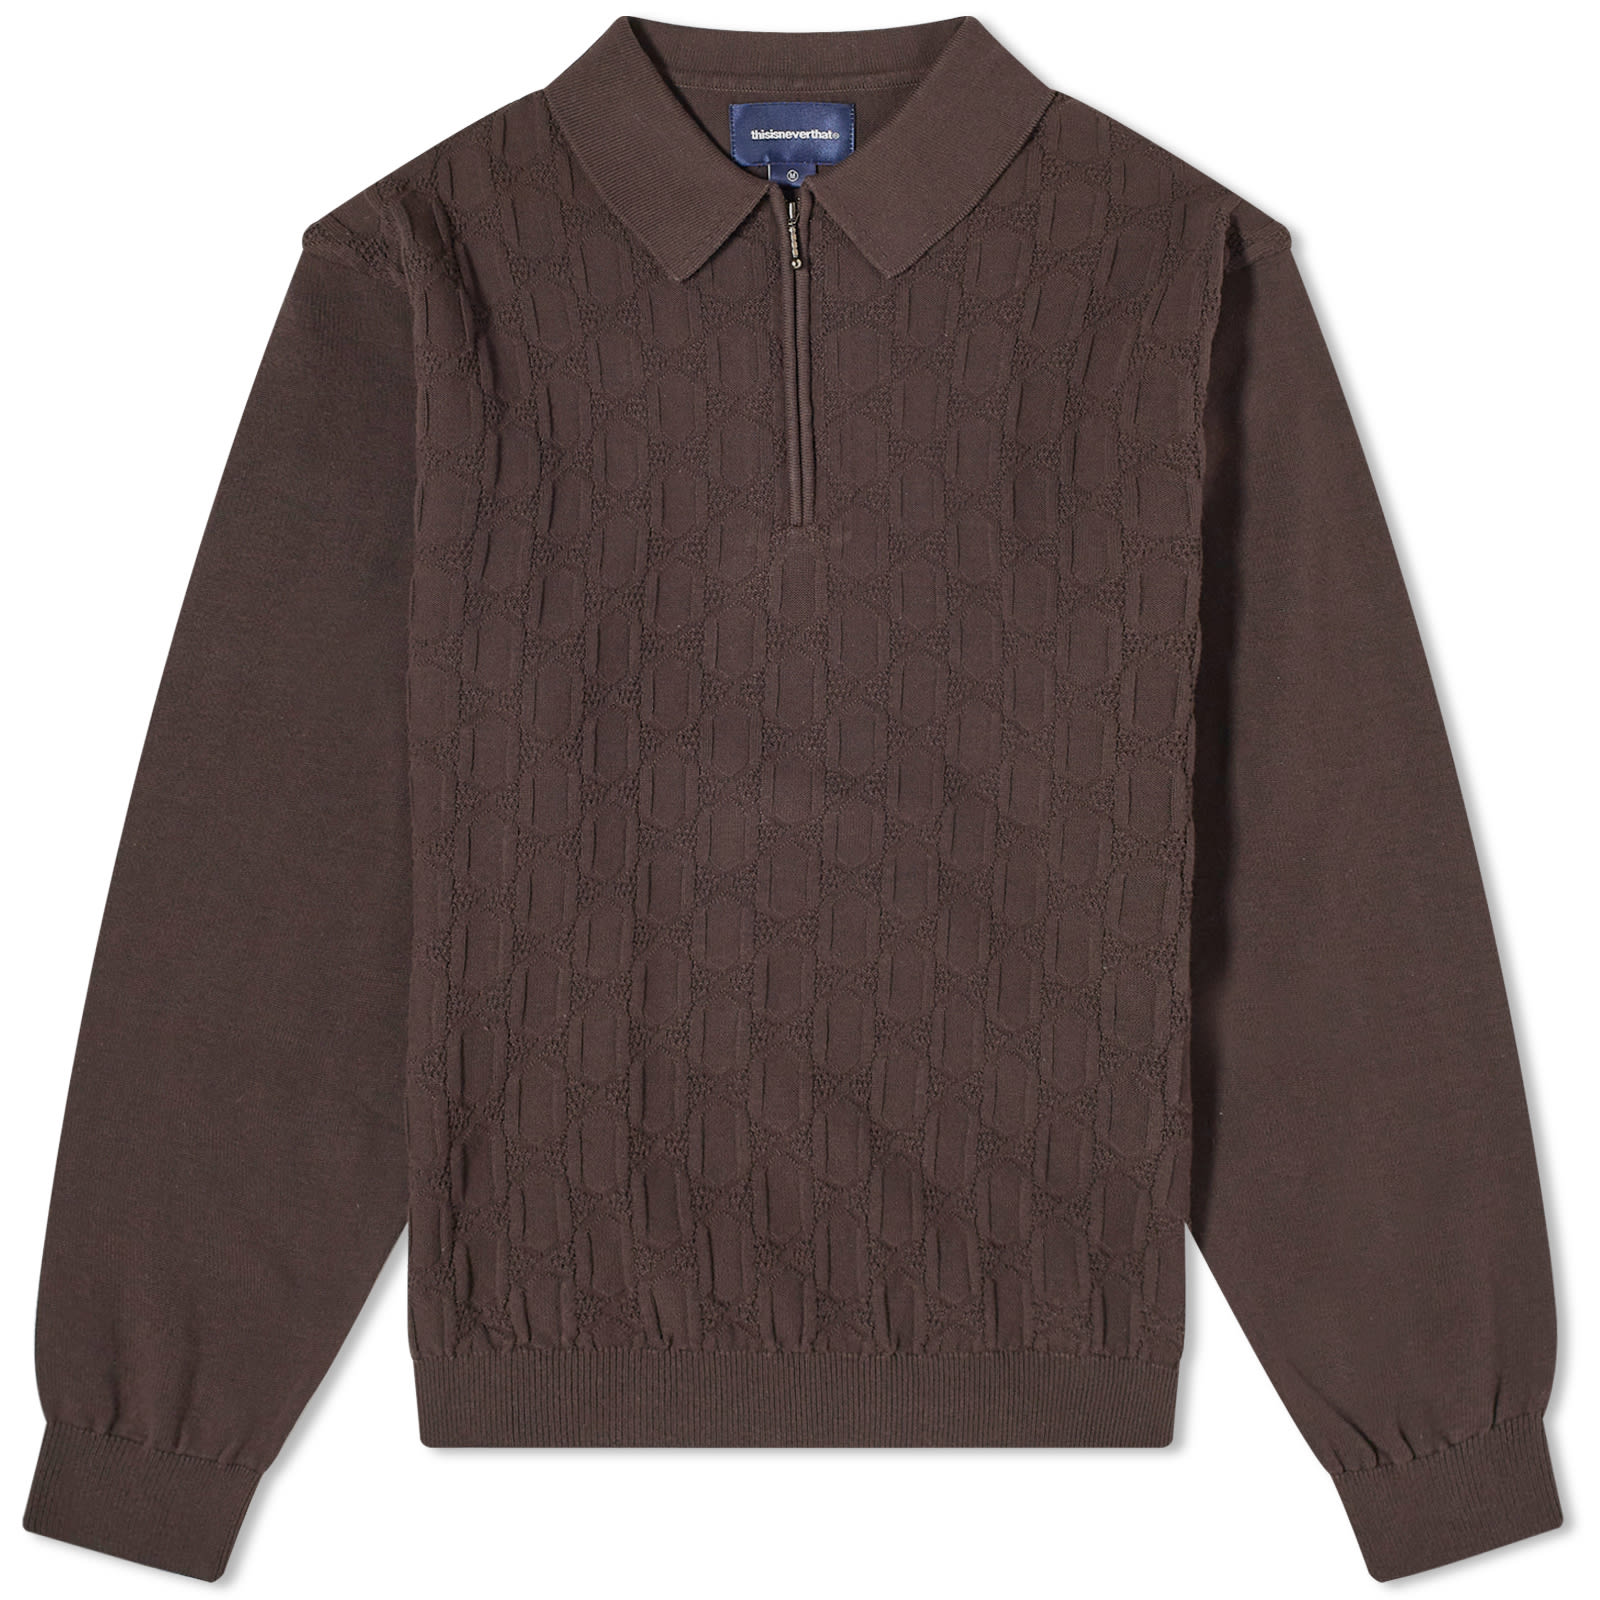 Свитер Thisisneverthat Cable Knit Zip, коричневый свитер thisisneverthat cable knit zip коричневый